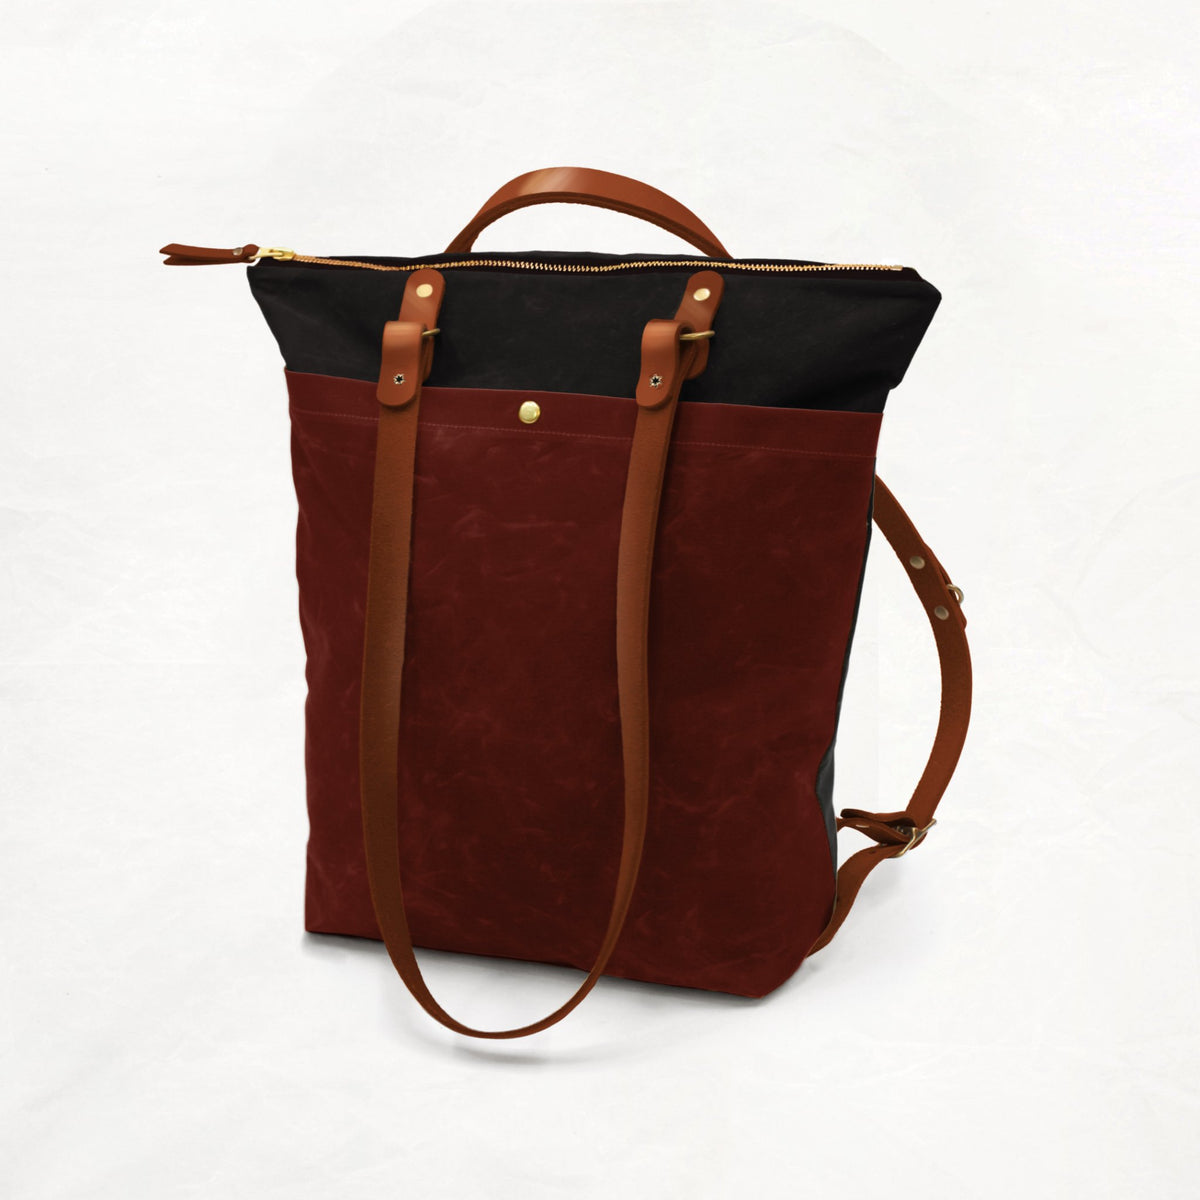 Maywood - Custom Bag Maker Kit